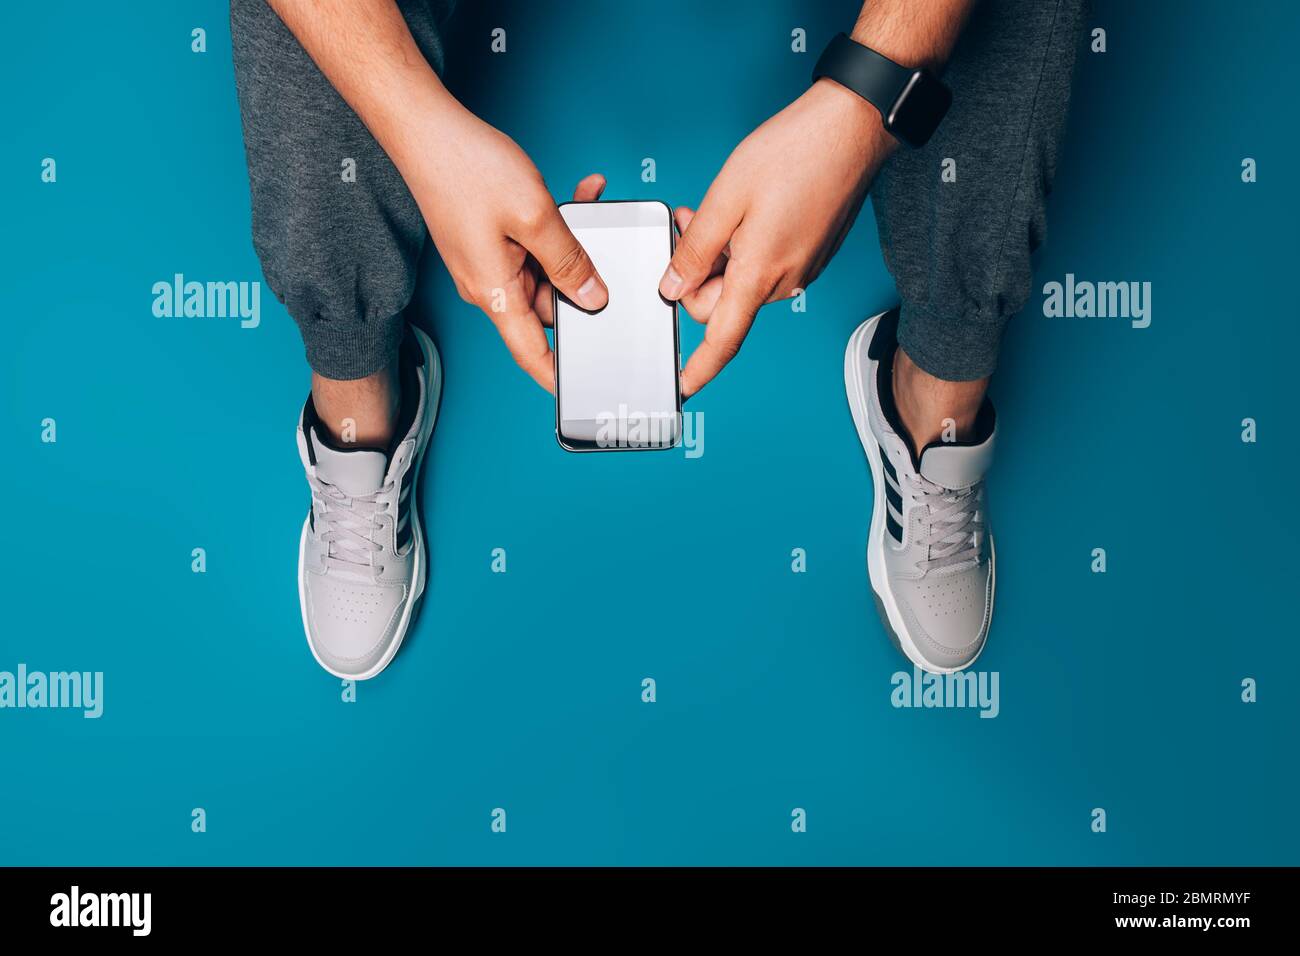 Guy holding smart phone Stock Photo